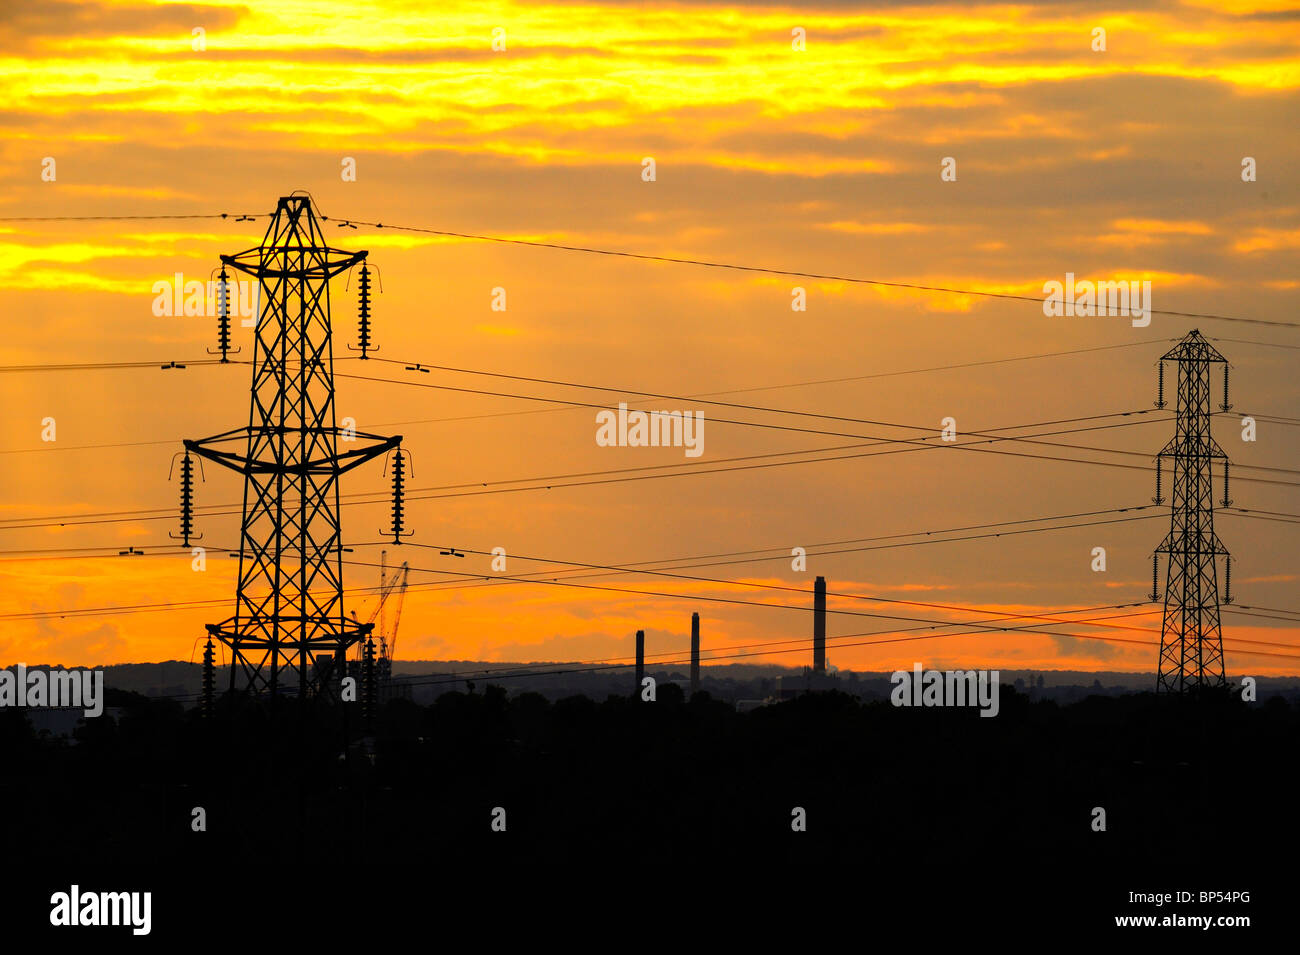 Coucher du soleil, le paysage industriel avec des pylônes électriques et cheminées Banque D'Images